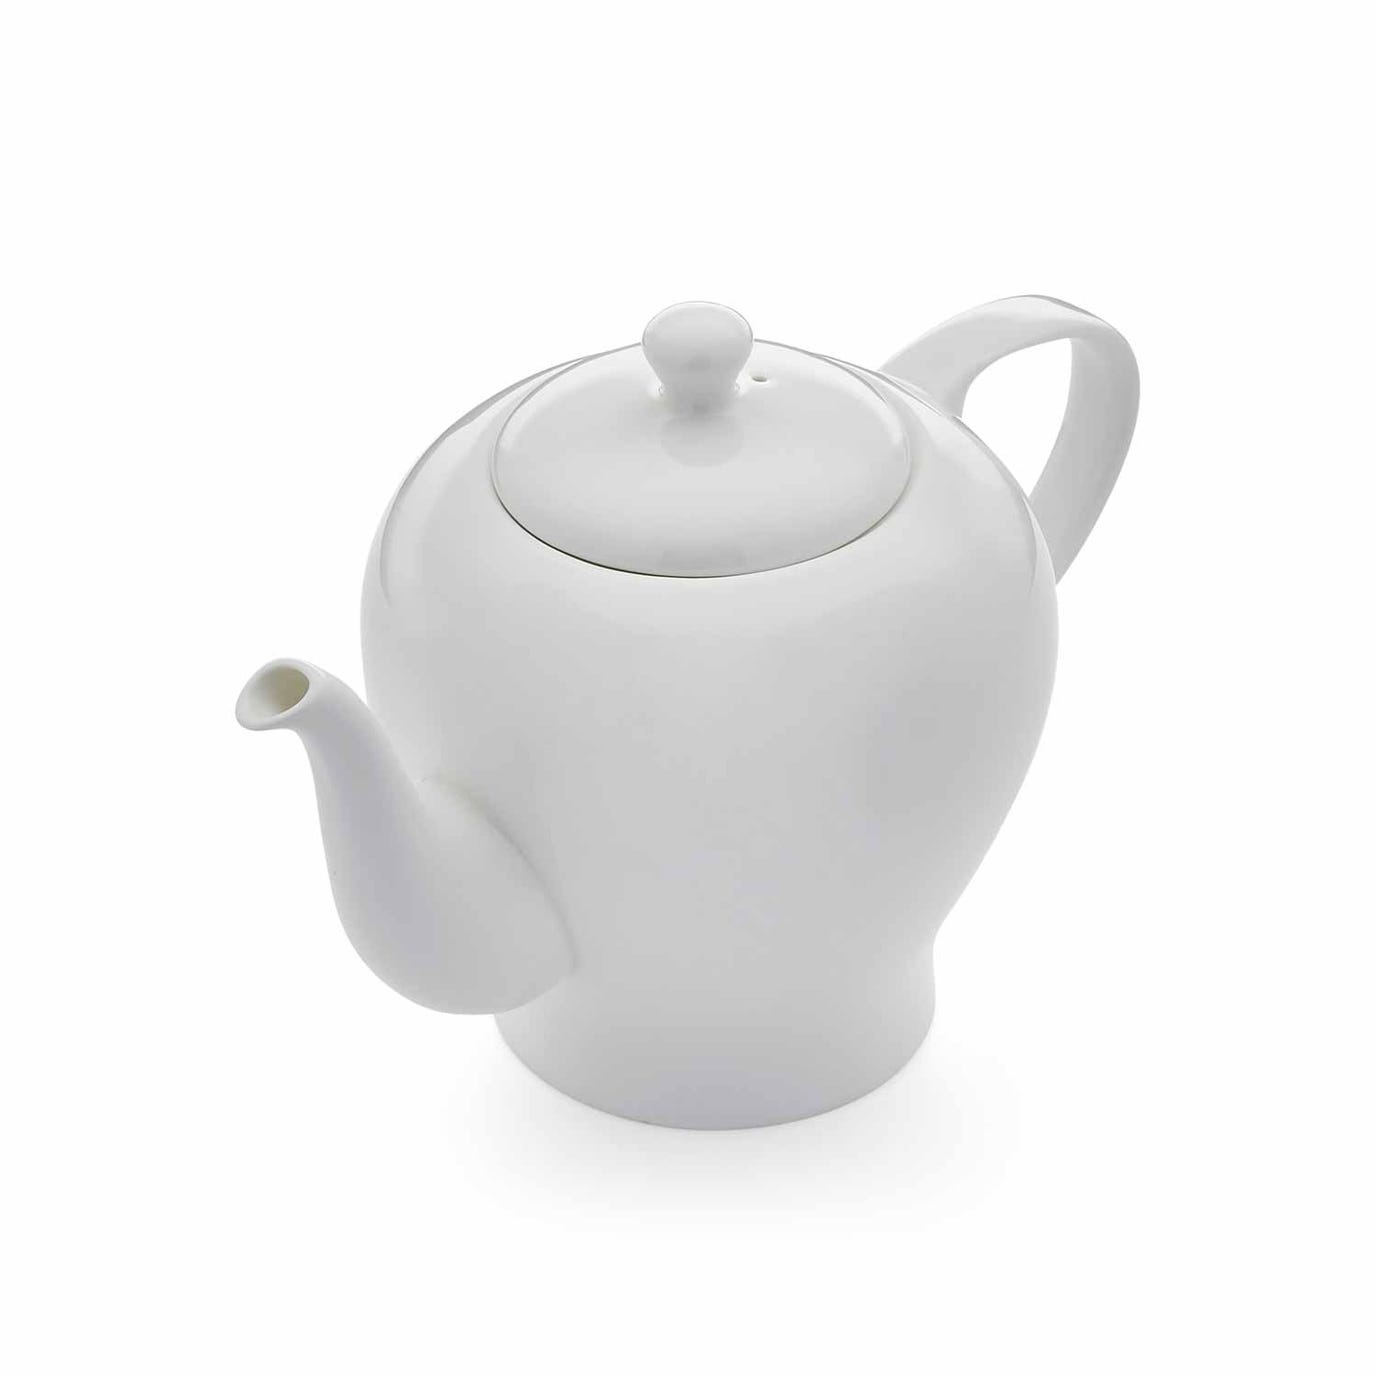 Serendipity Teapot